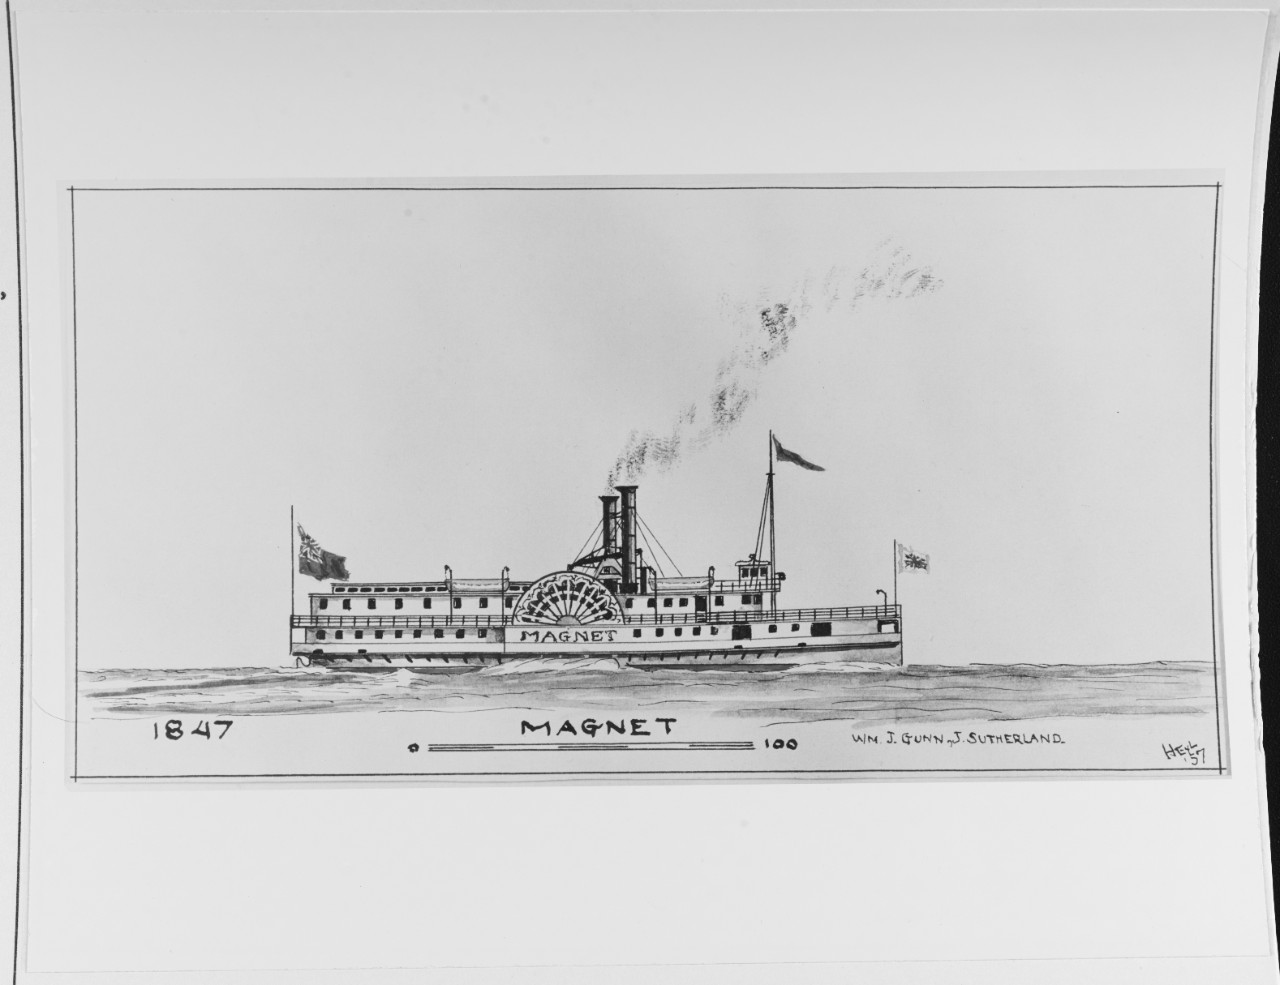 MAGNET (Canadian merchant steamer, 1847-1909)